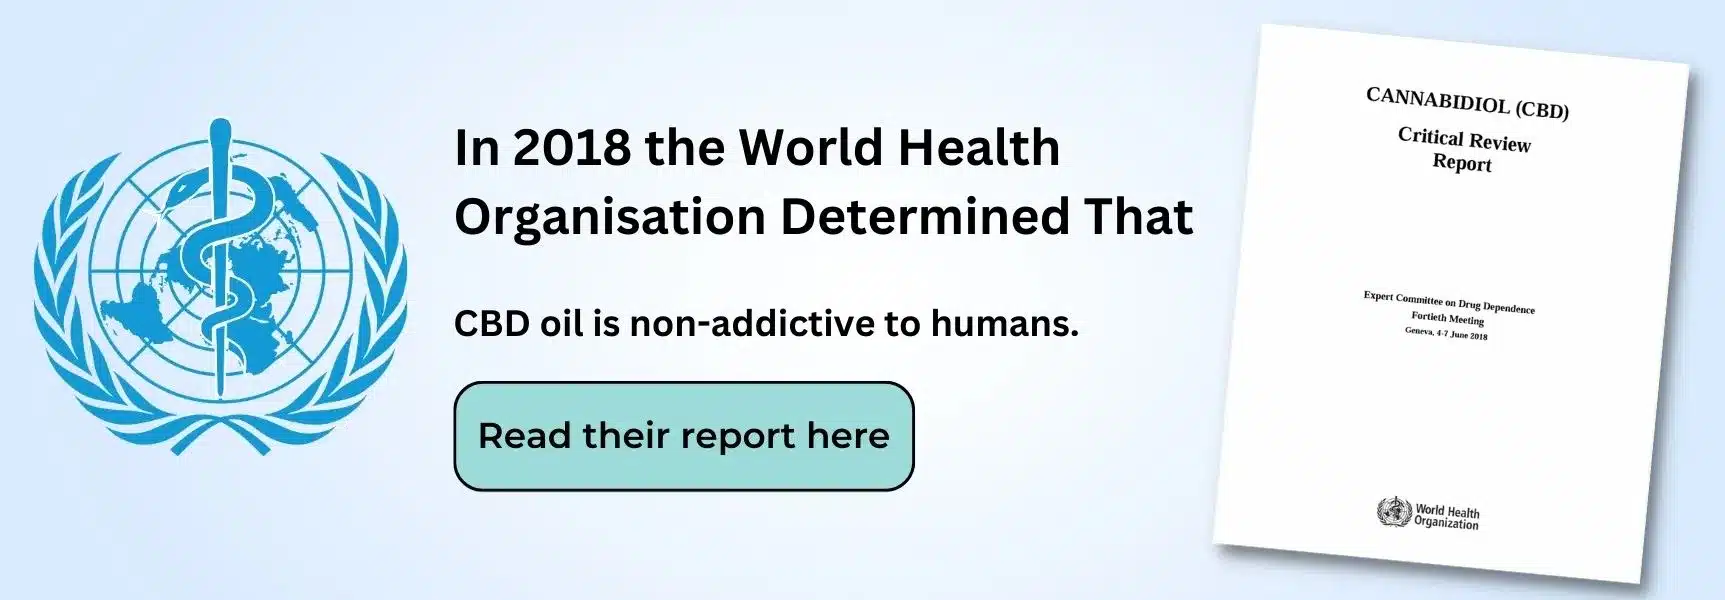 ένα πανό που έλεγε ότι το 2018 ο Παγκόσμιος Οργανισμός Υγείας έκρινε CBD να μην είναι εθιστικό και να δημιουργούν ελάχιστες ανησυχίες για τη δημόσια ασφάλεια. Αυτό το πανό μεταβαίνει στην αναφορά του ΠΟΥ.